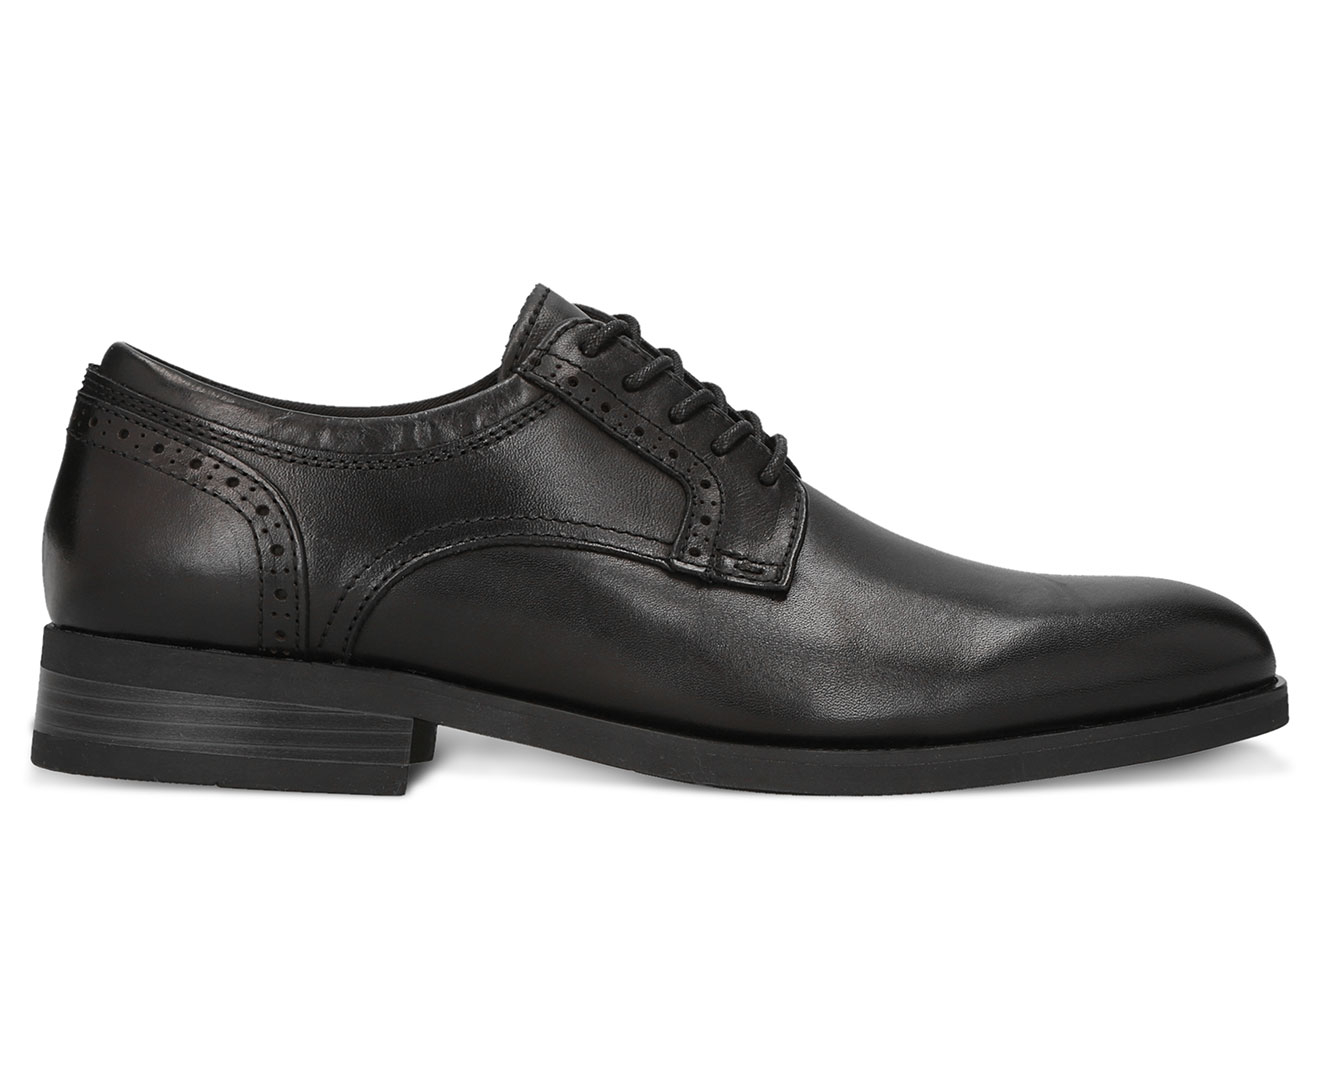 Mens Dress Shoe Black ALDO Men Shoes Flat Shoes Formal Shoes Sergei Size 7 